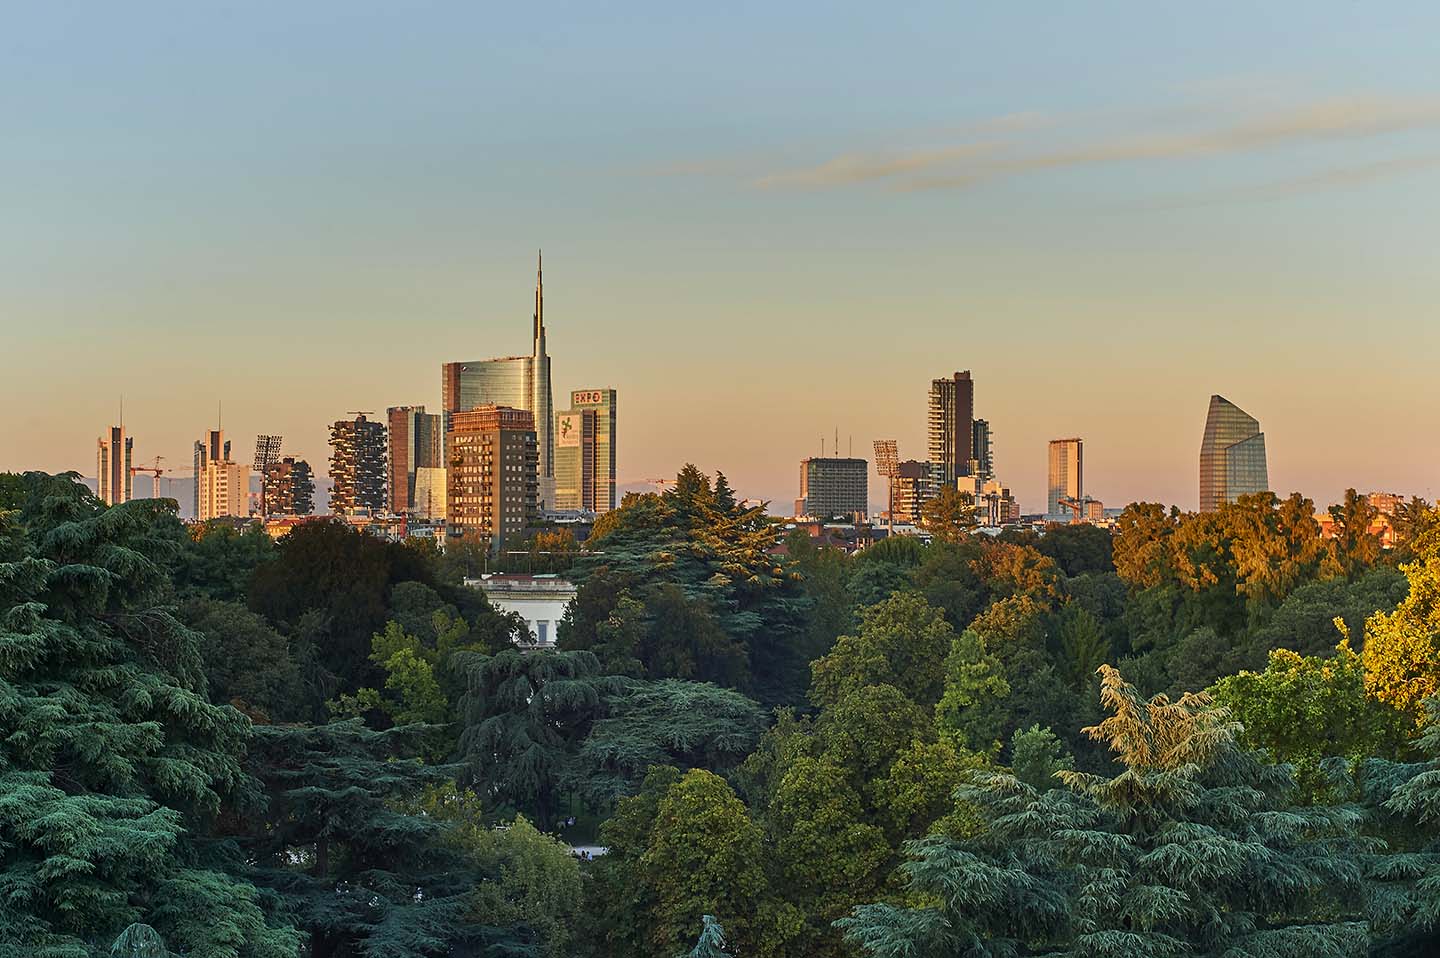 Milan's skyline